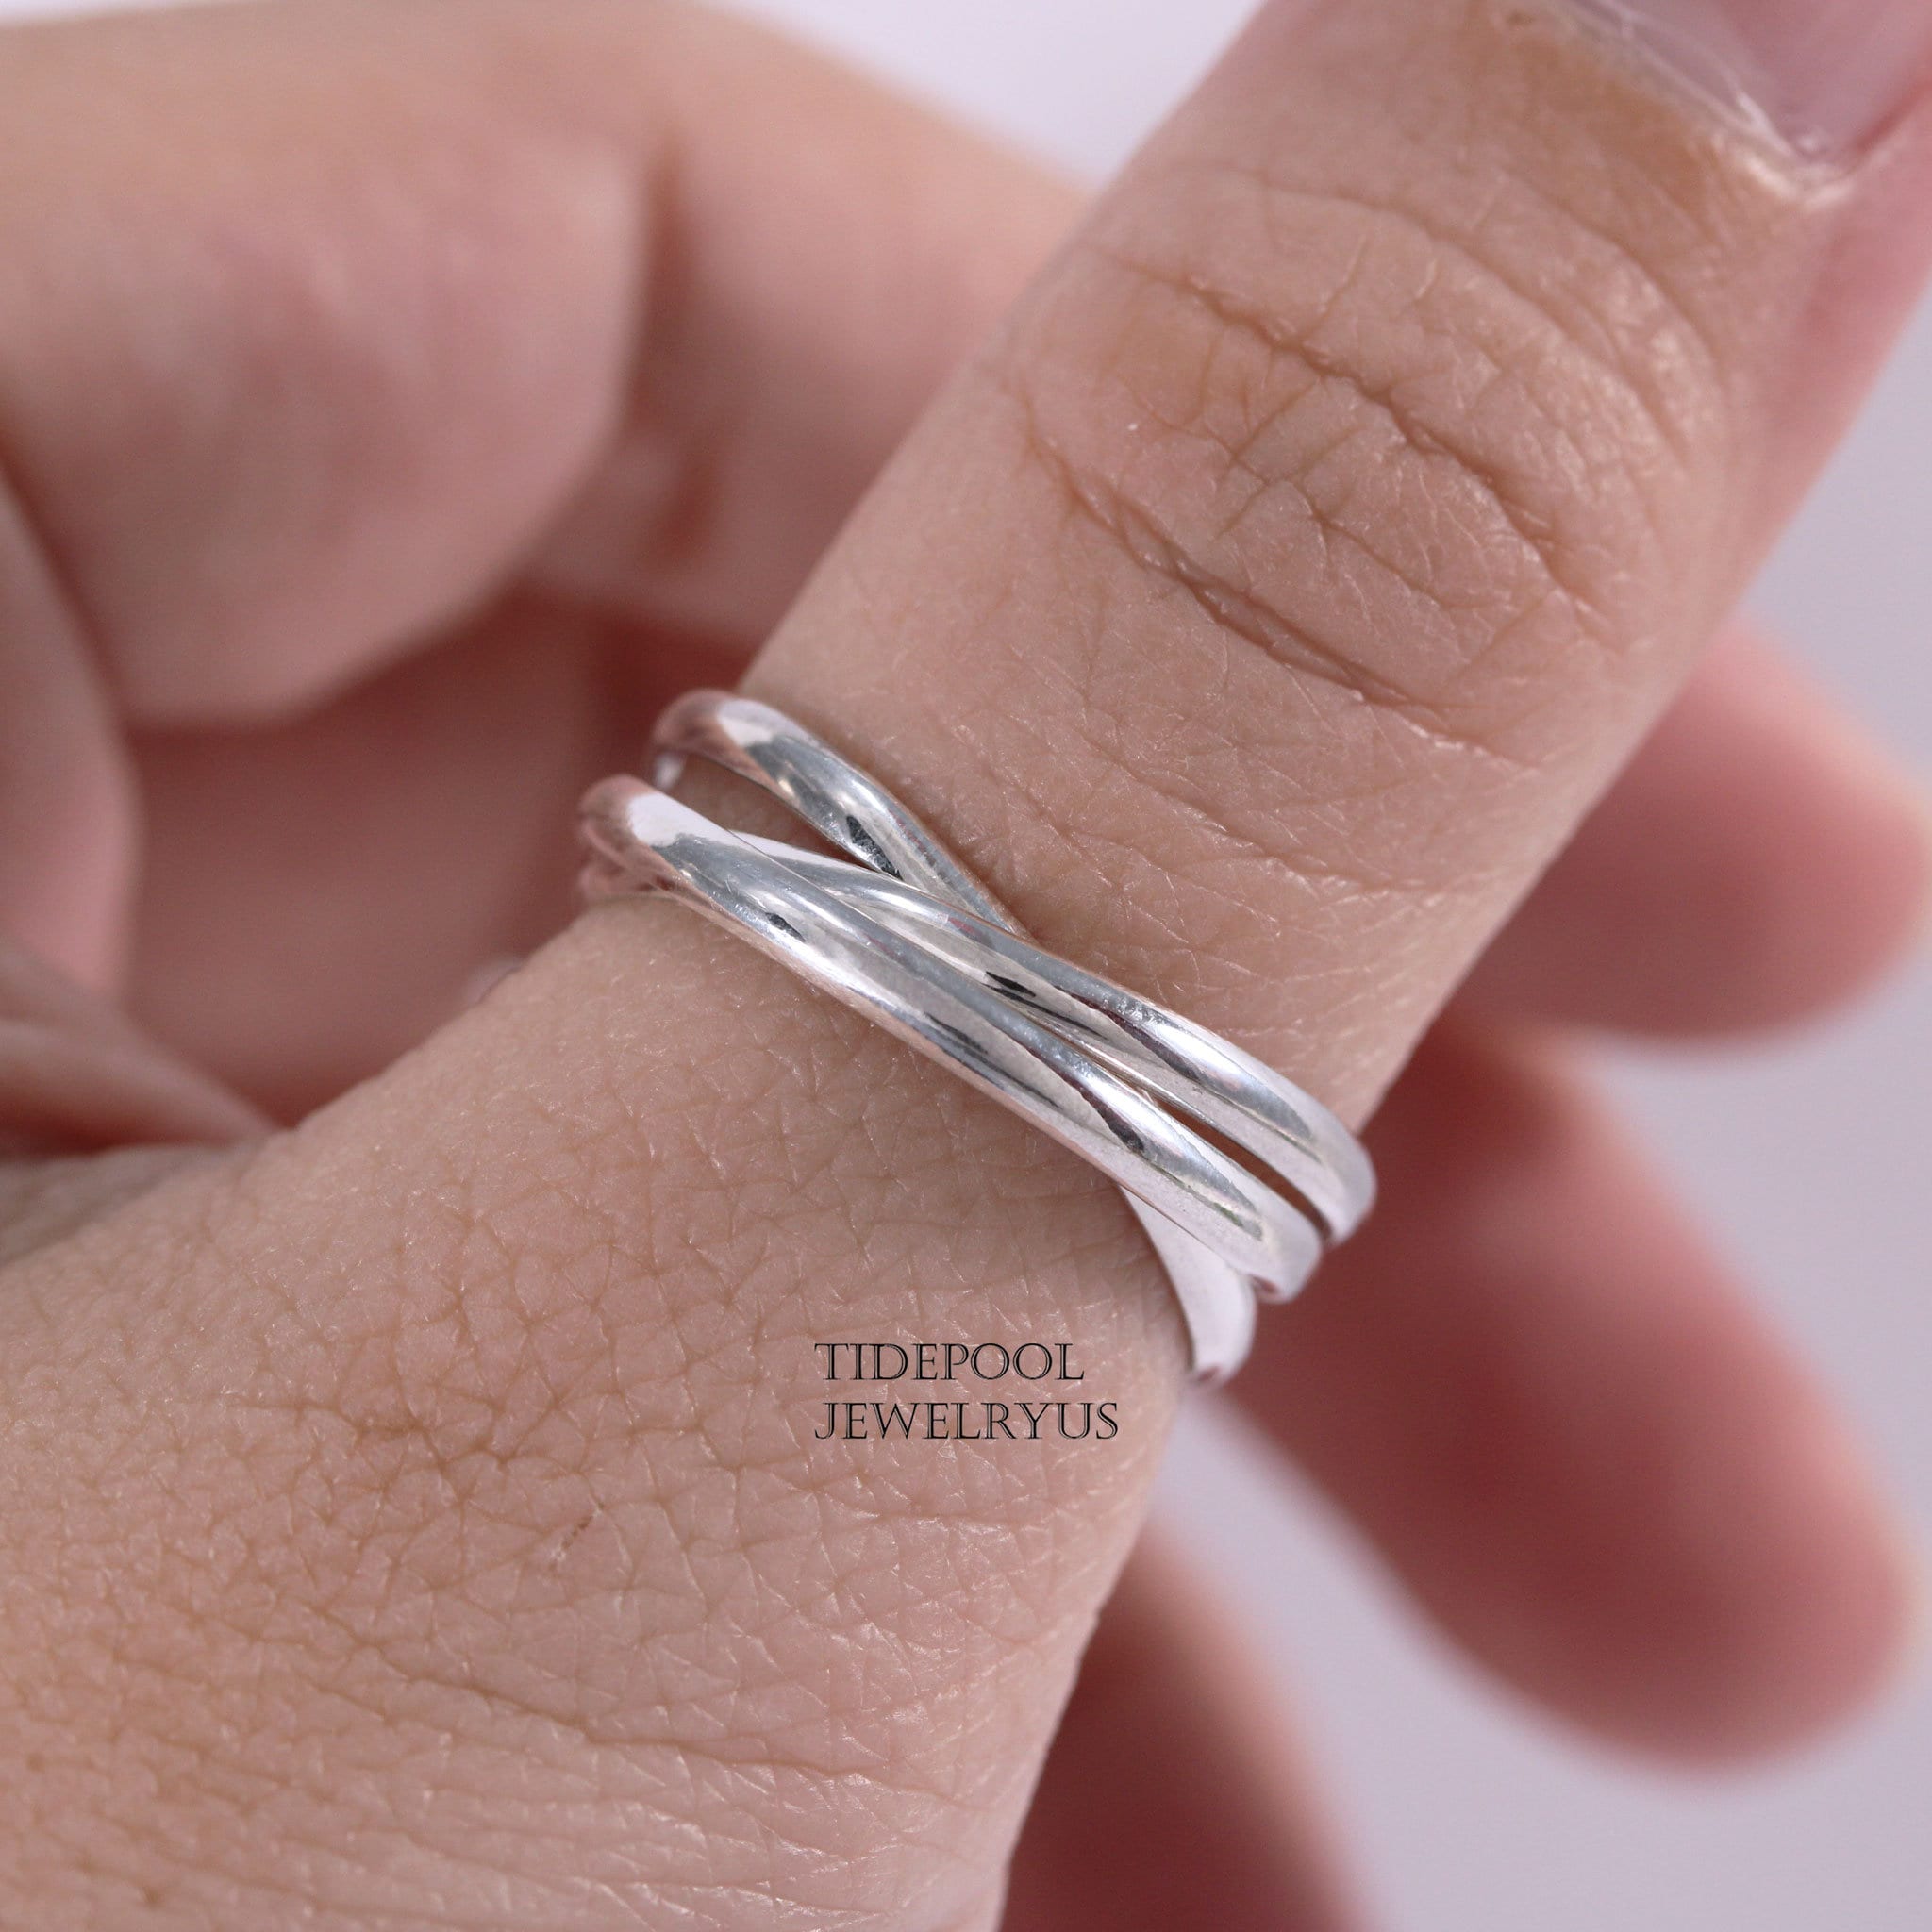 Duim of Knuckle Ringen voor vrouwen Gemaakt in Sterling Silver Dagelijkse sieraden voor comfort Midi Ring Sieraden Ringen Midiringen 